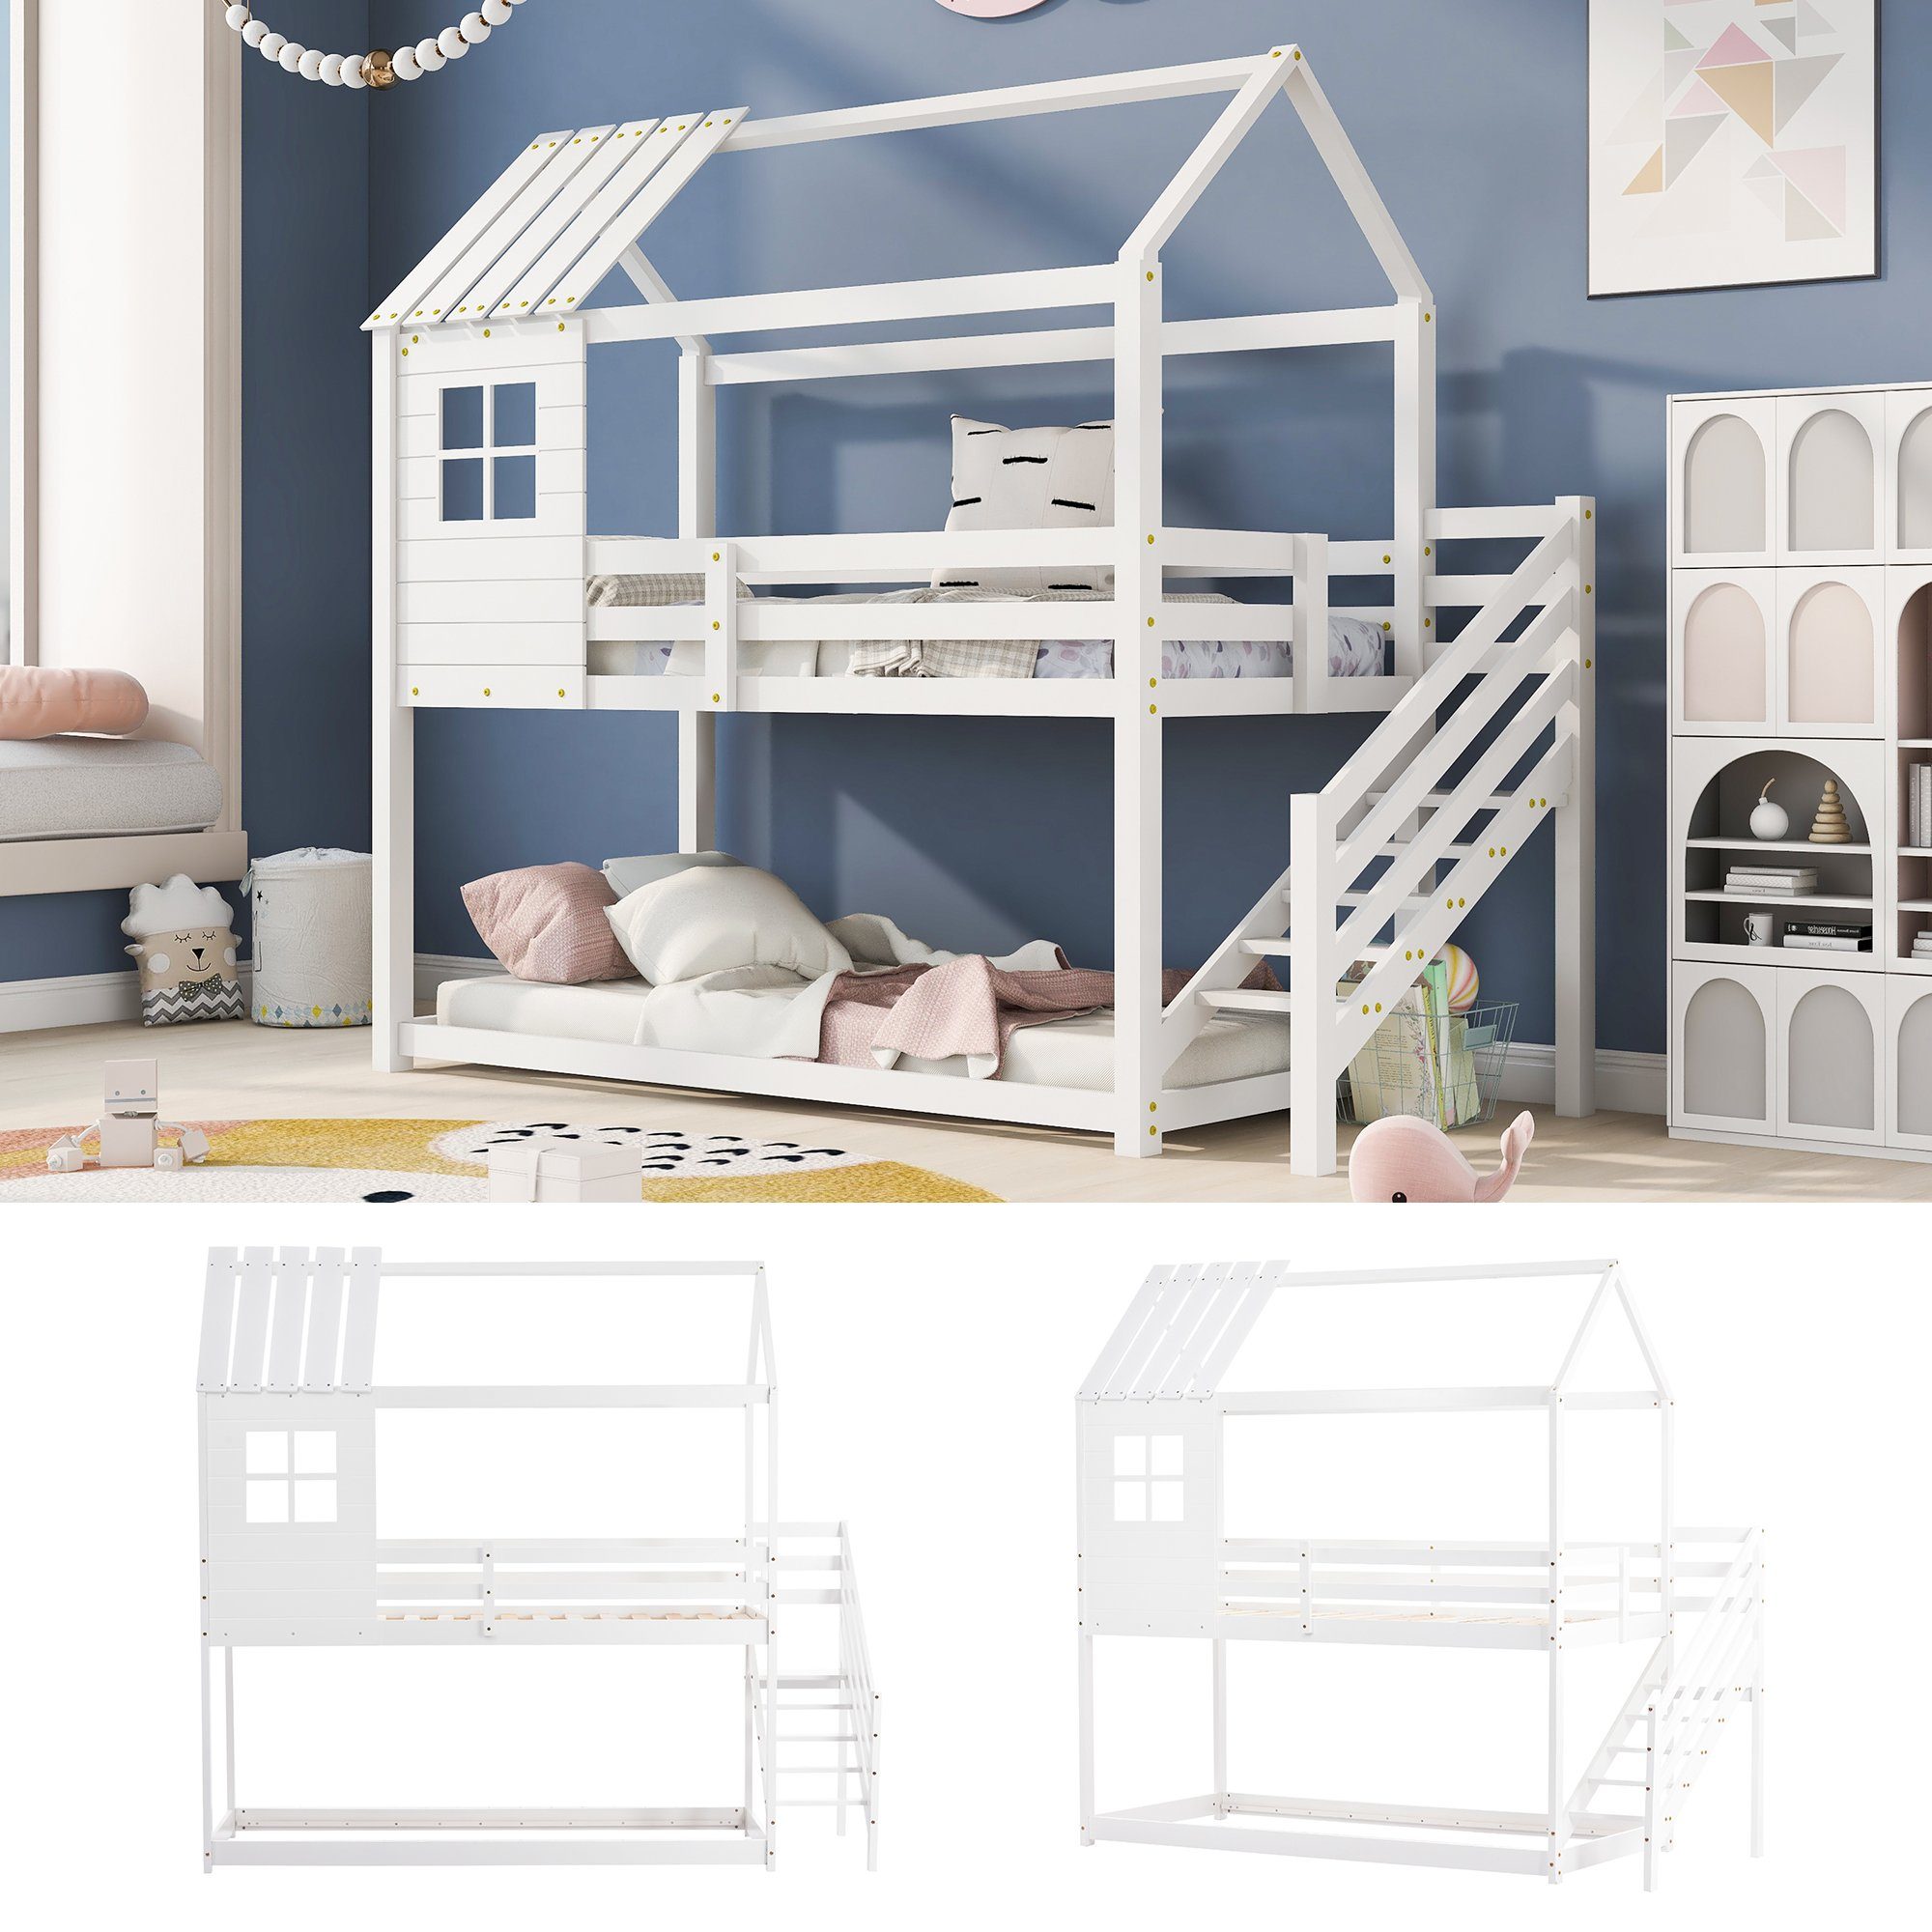 Ulife mit | 90x200cm mit Weiß Fenster, Etagenbett Hausbett Weiß Hochbett Kinderbett aus Weiß Treppe Kiefer